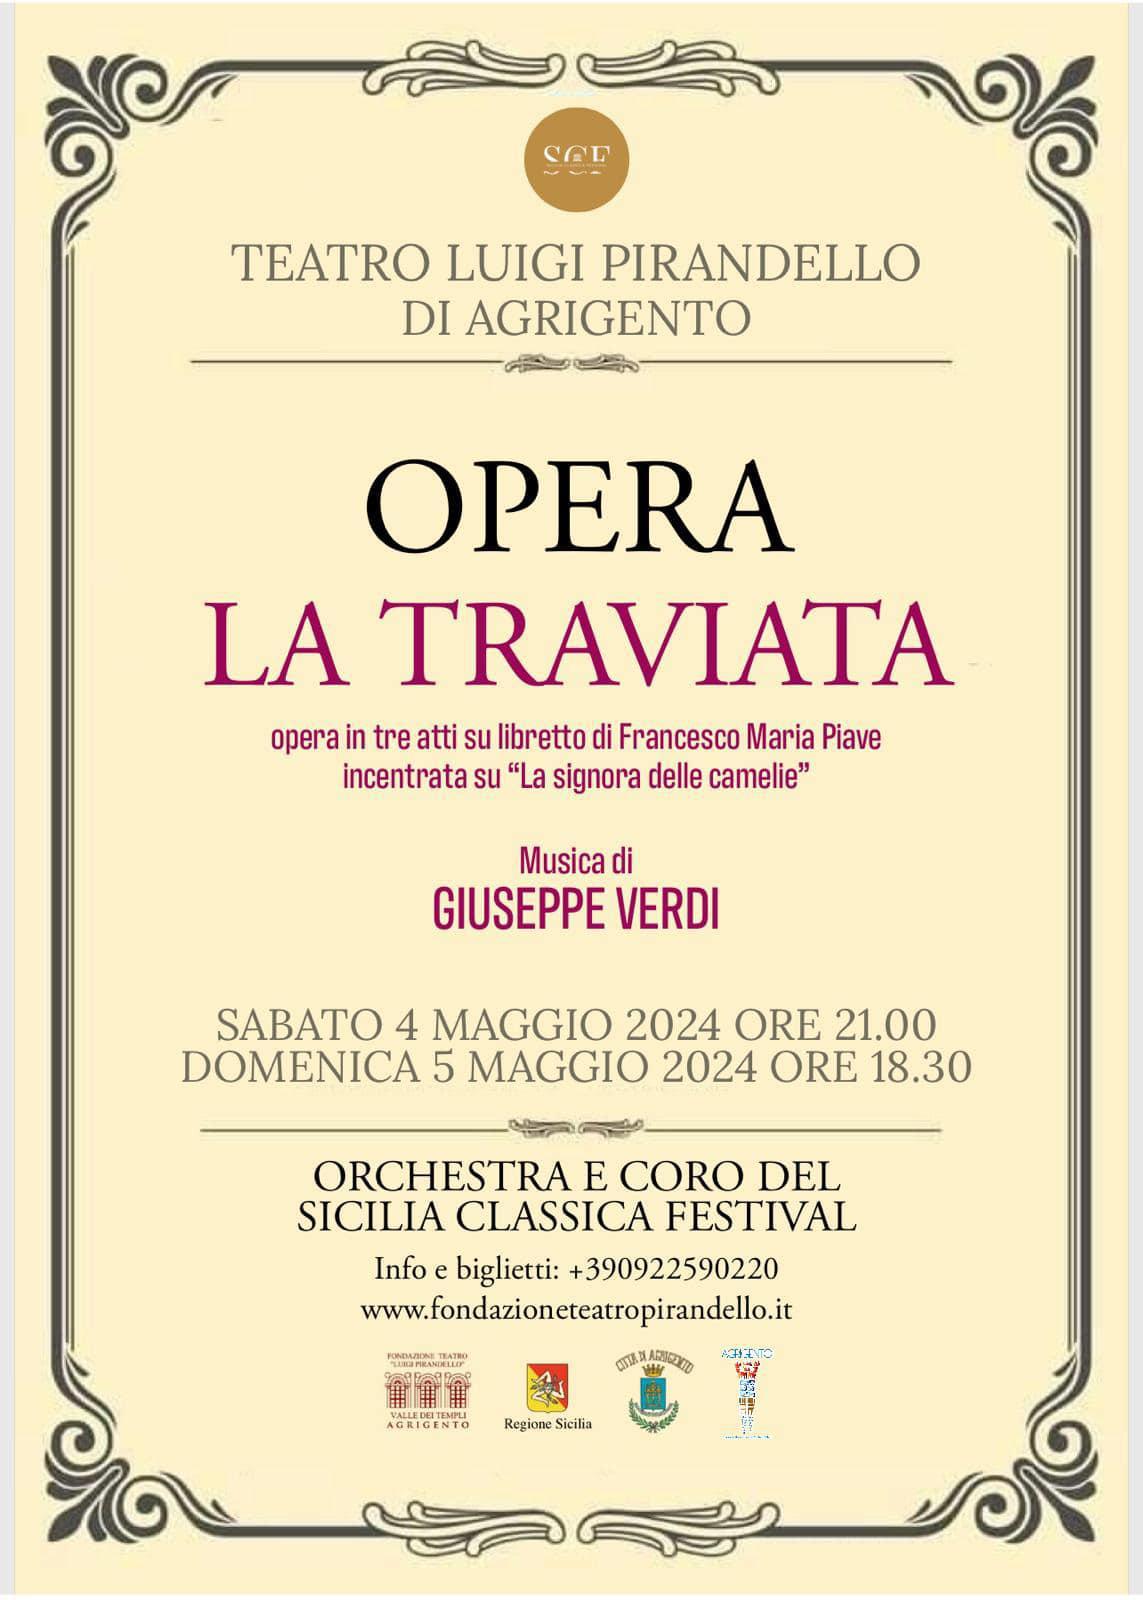 Opera la Traviata - Musica di Giuseppe Verdi (inizio ore 18:30)